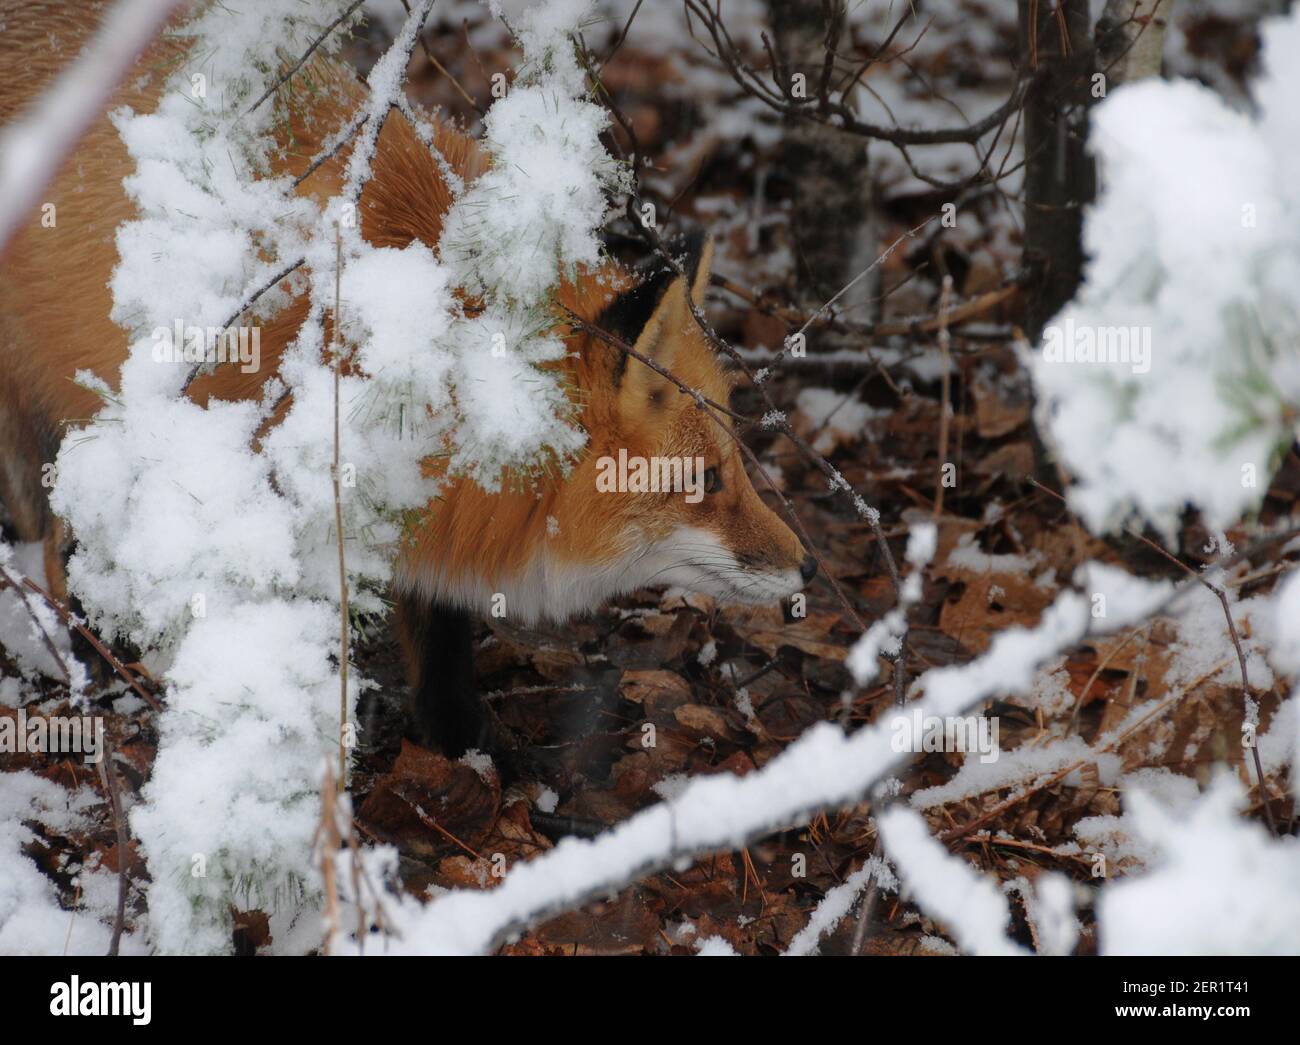 Vista laterale del profilo della testa della volpe rossa durante la stagione invernale godendo del suo ambiente e habitat. Immagine FOX. Immagine. Verticale. FOX foto. Foto Stock